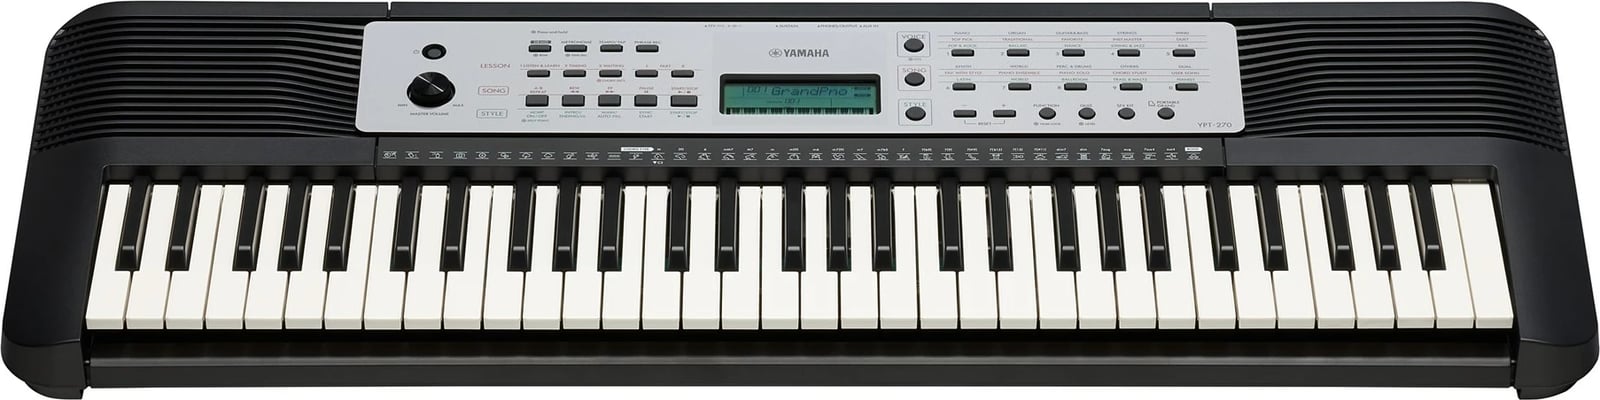 Yamaha YPT-270 MIDI tastierë me 61 çelësa, Zi